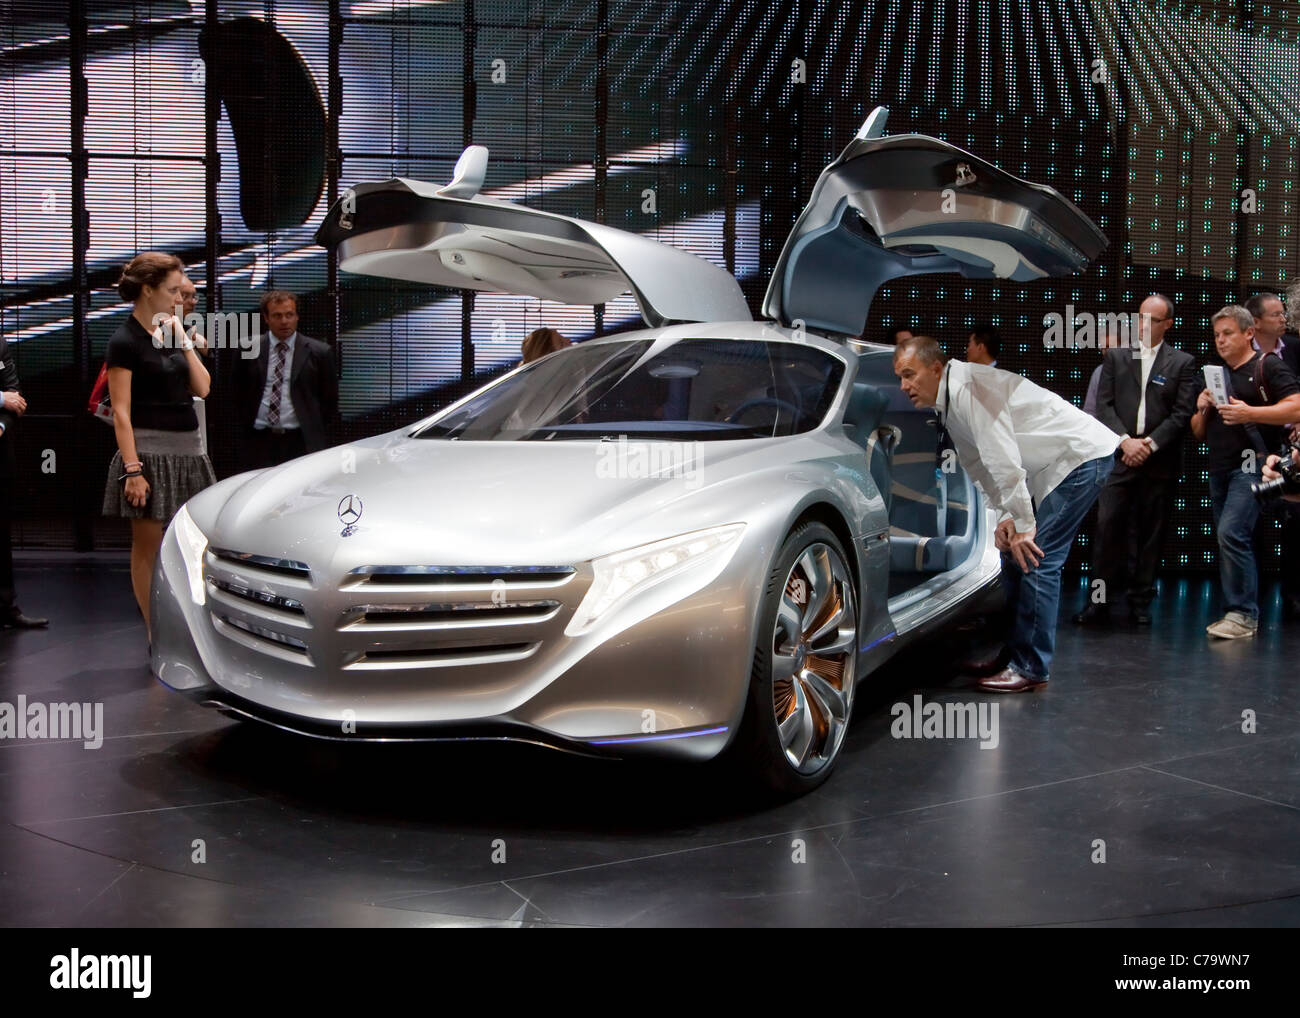 Nouveau Concept Car Mercedes Benz F125 sur l'IAA 2011 International Motor Show de Francfort, Allemagne Banque D'Images